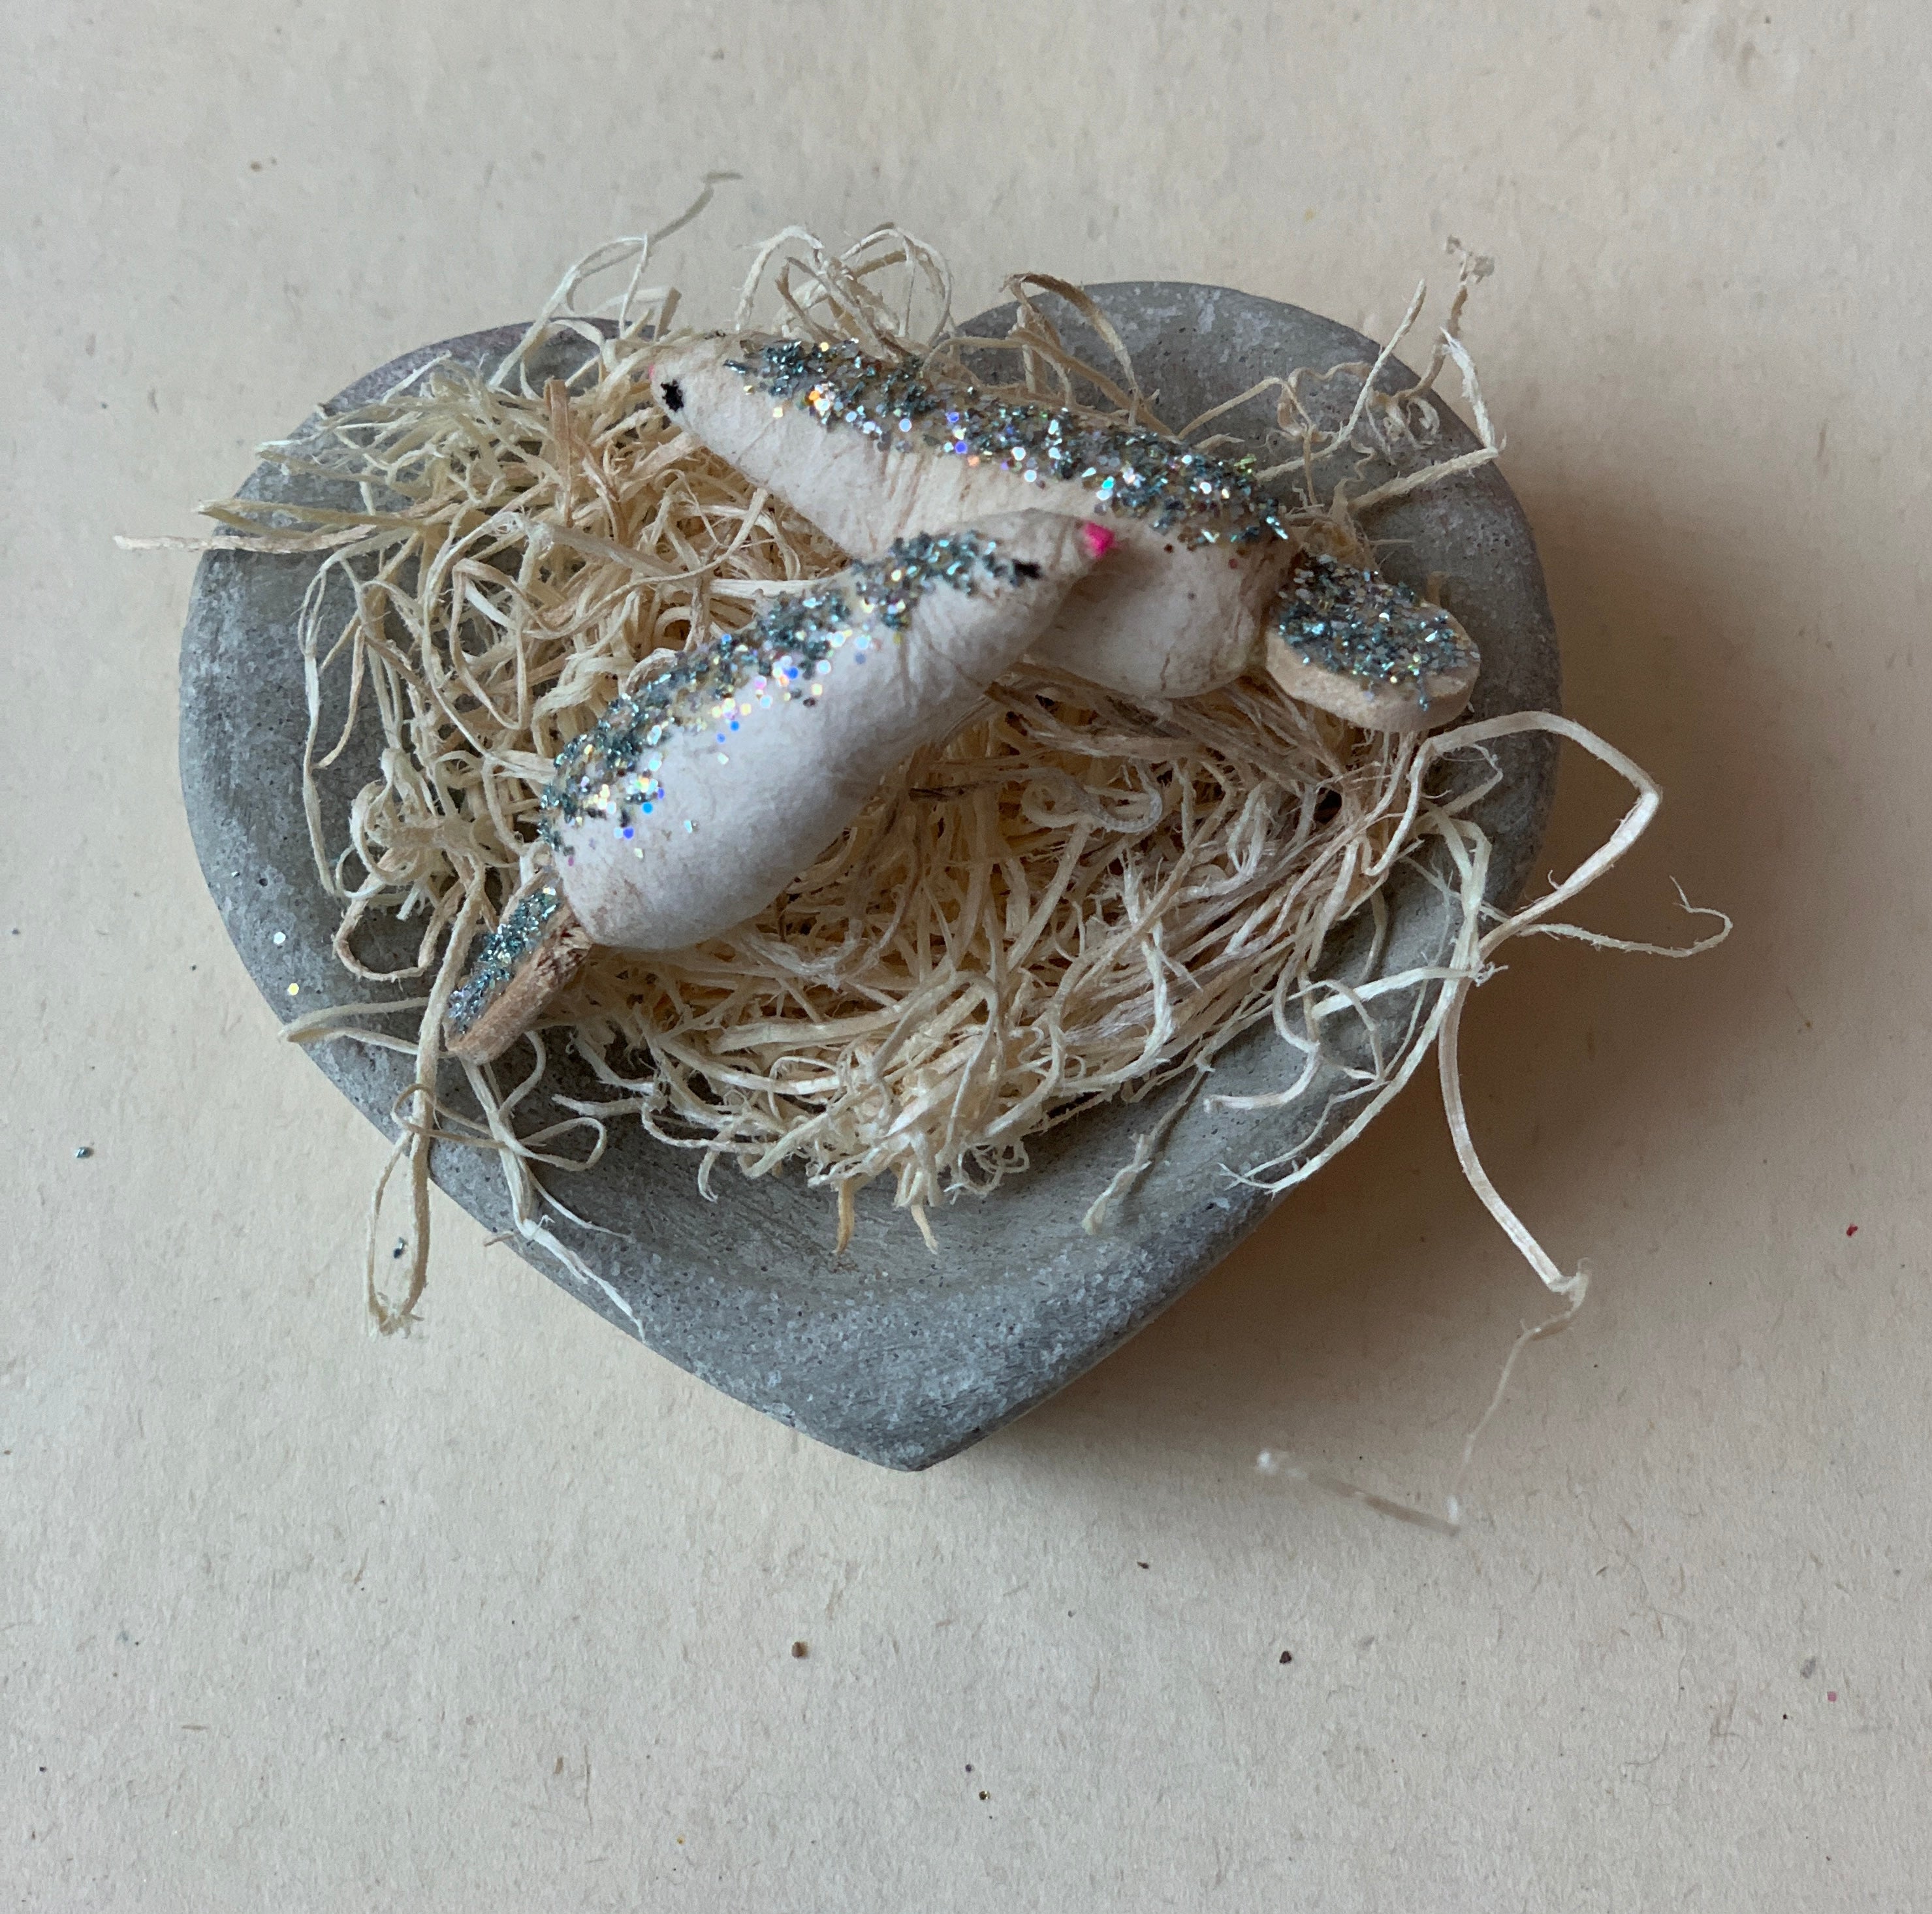 Little Love Birds in a Handmade Heart Nest